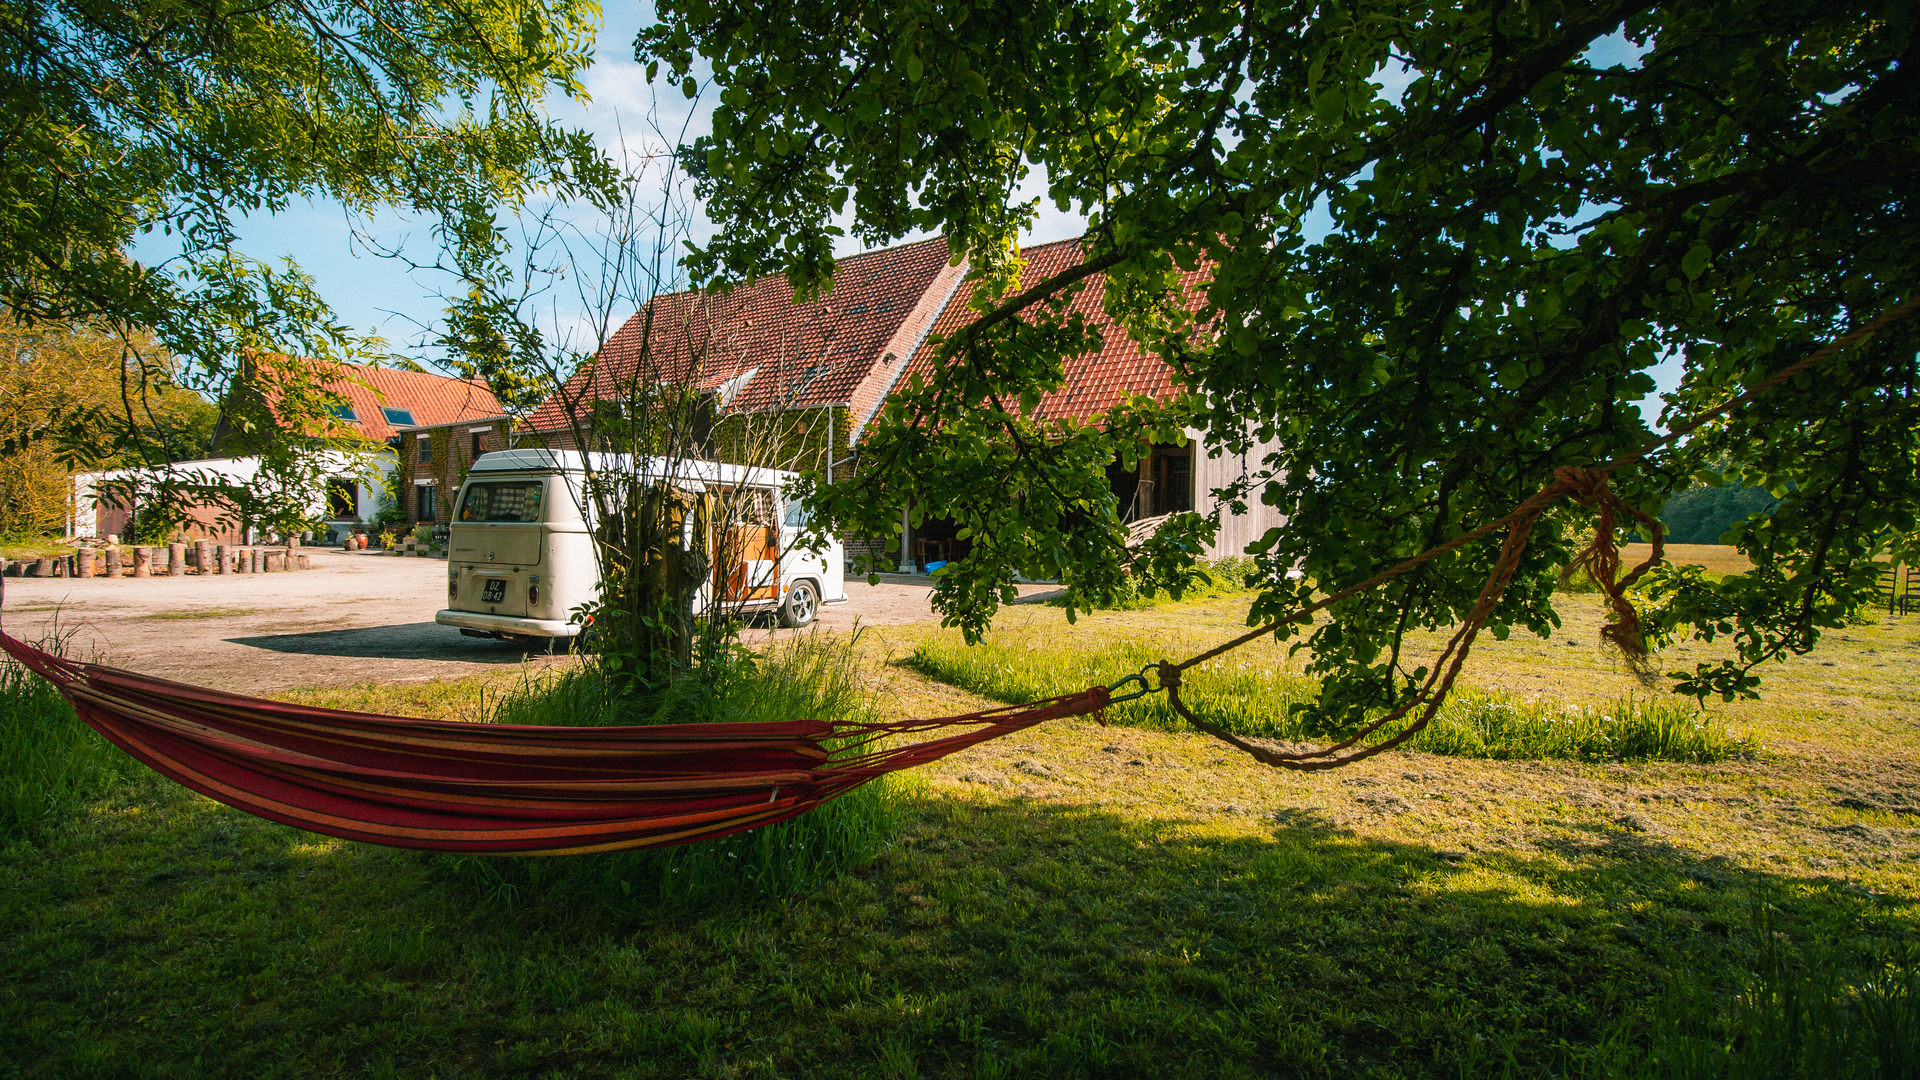 Camper sites in Belgium